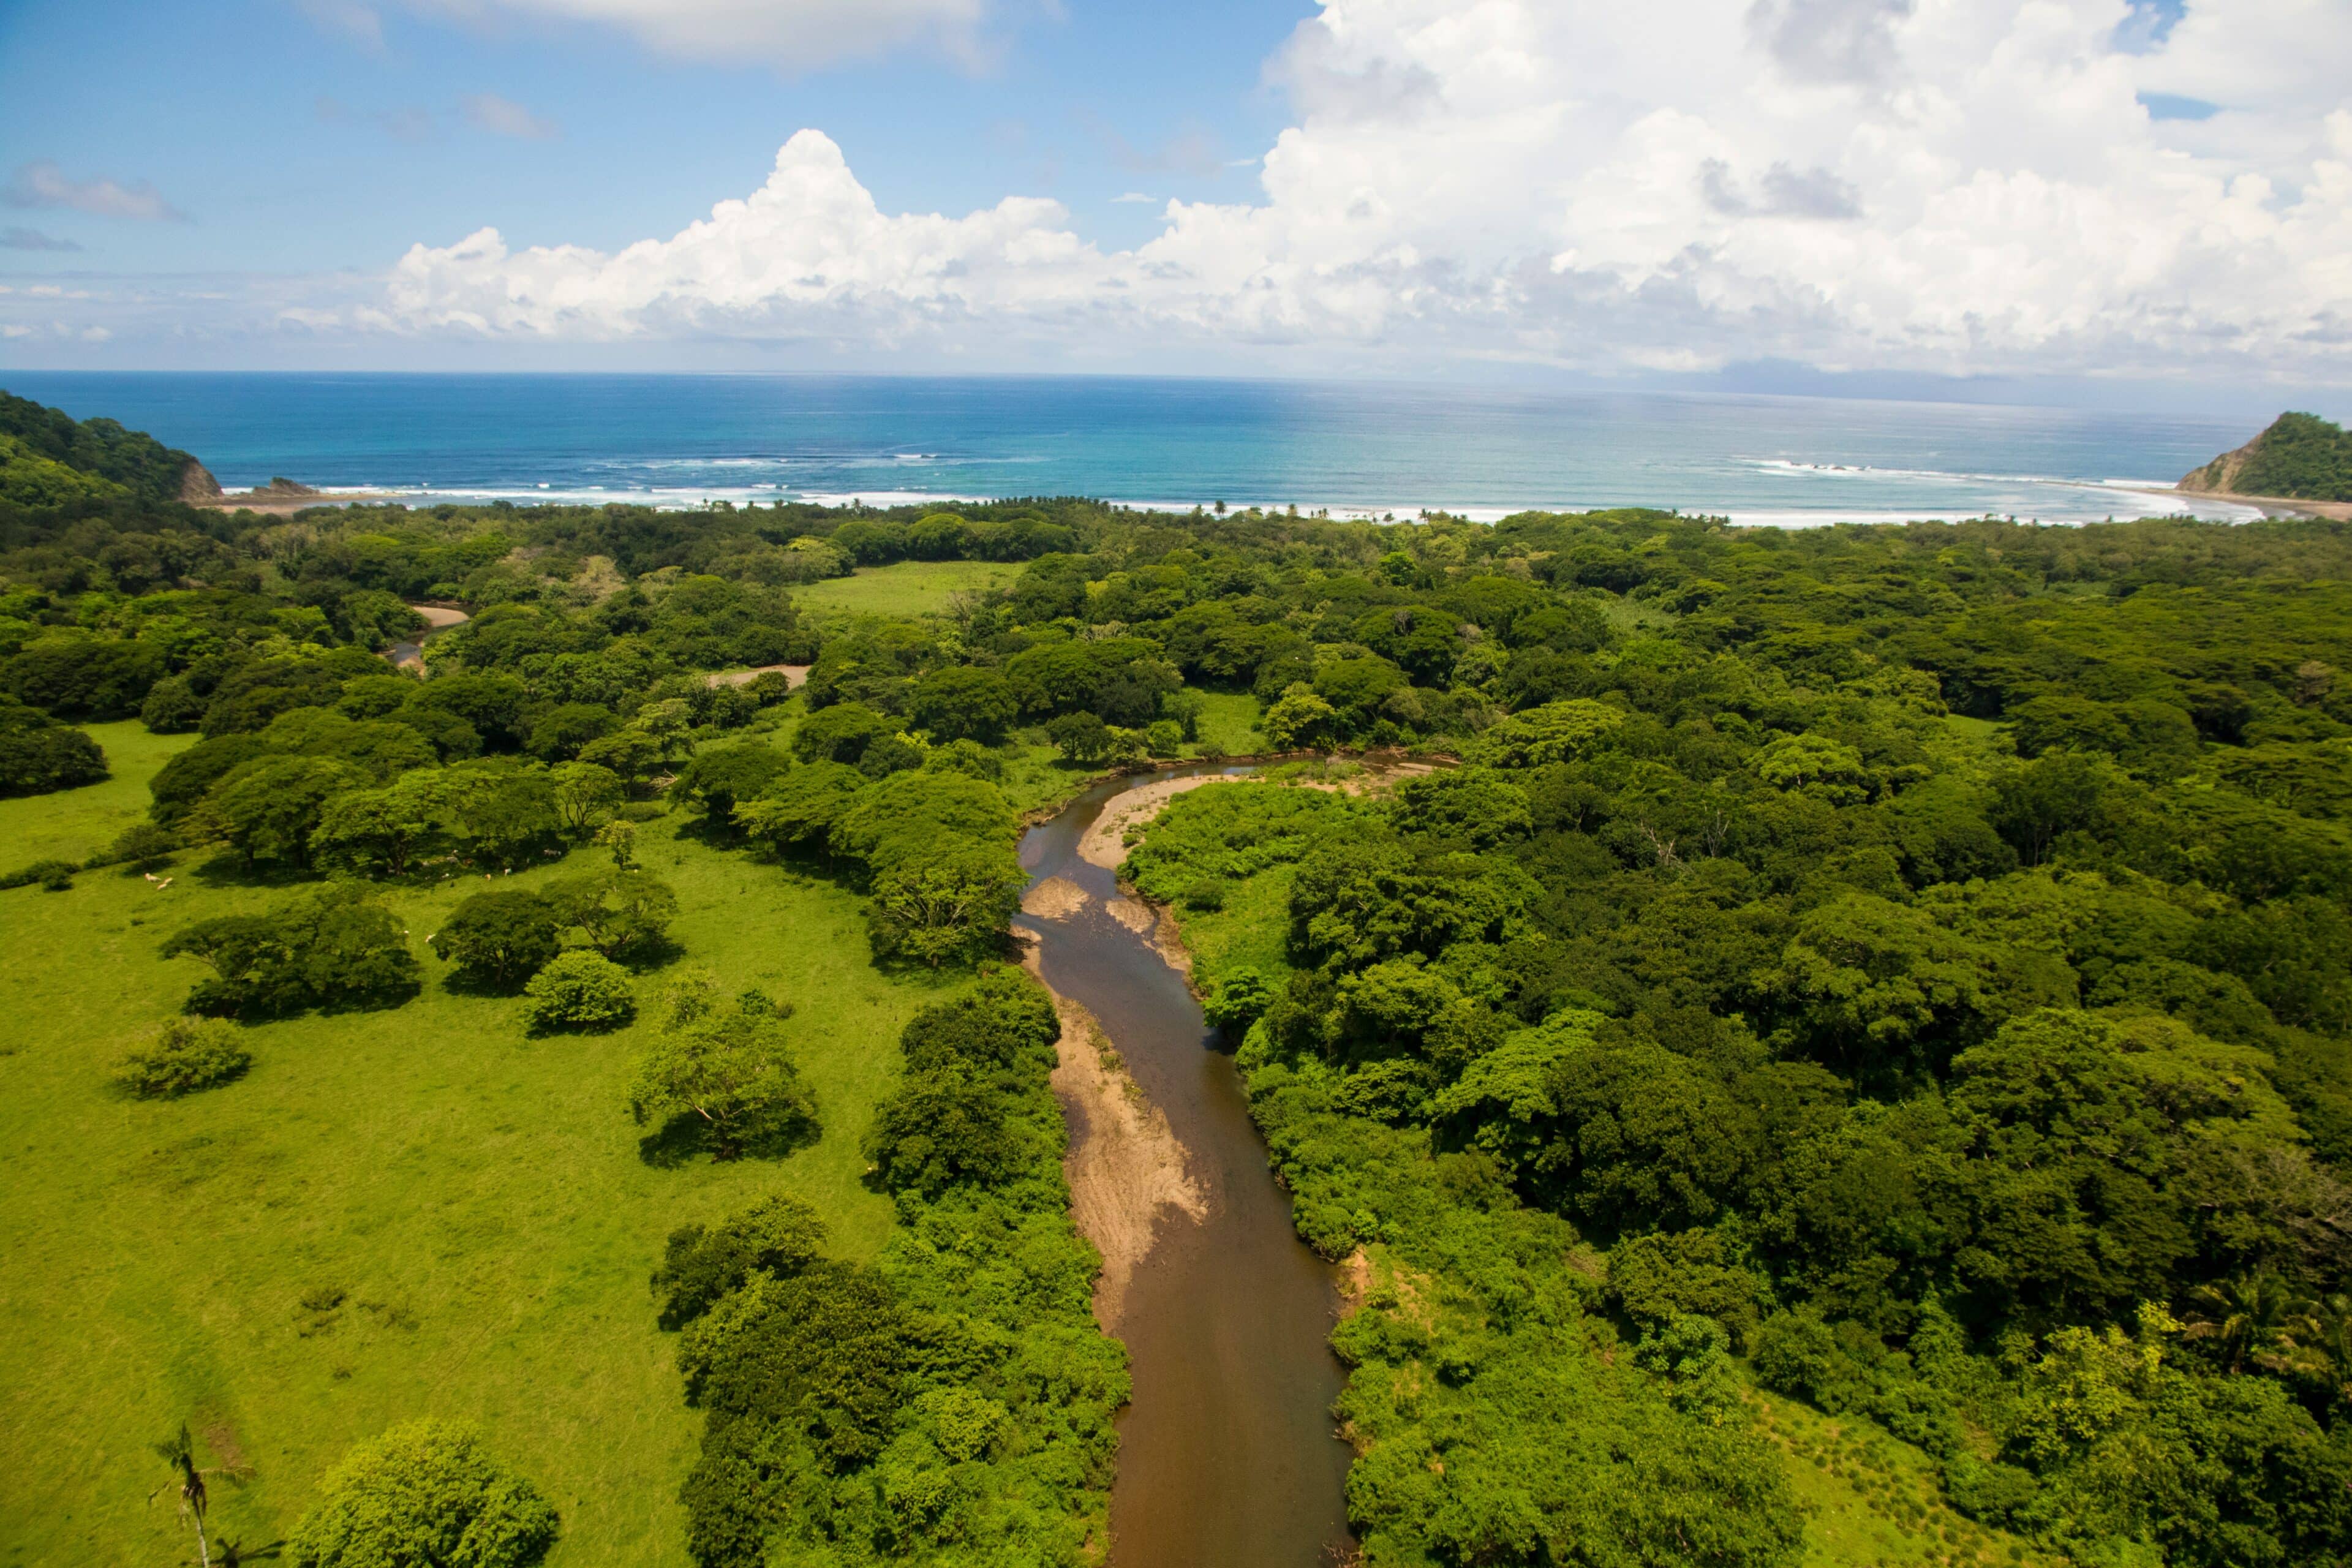 Elección de la Temporada Adecuada para tu Safari en Costa Rica